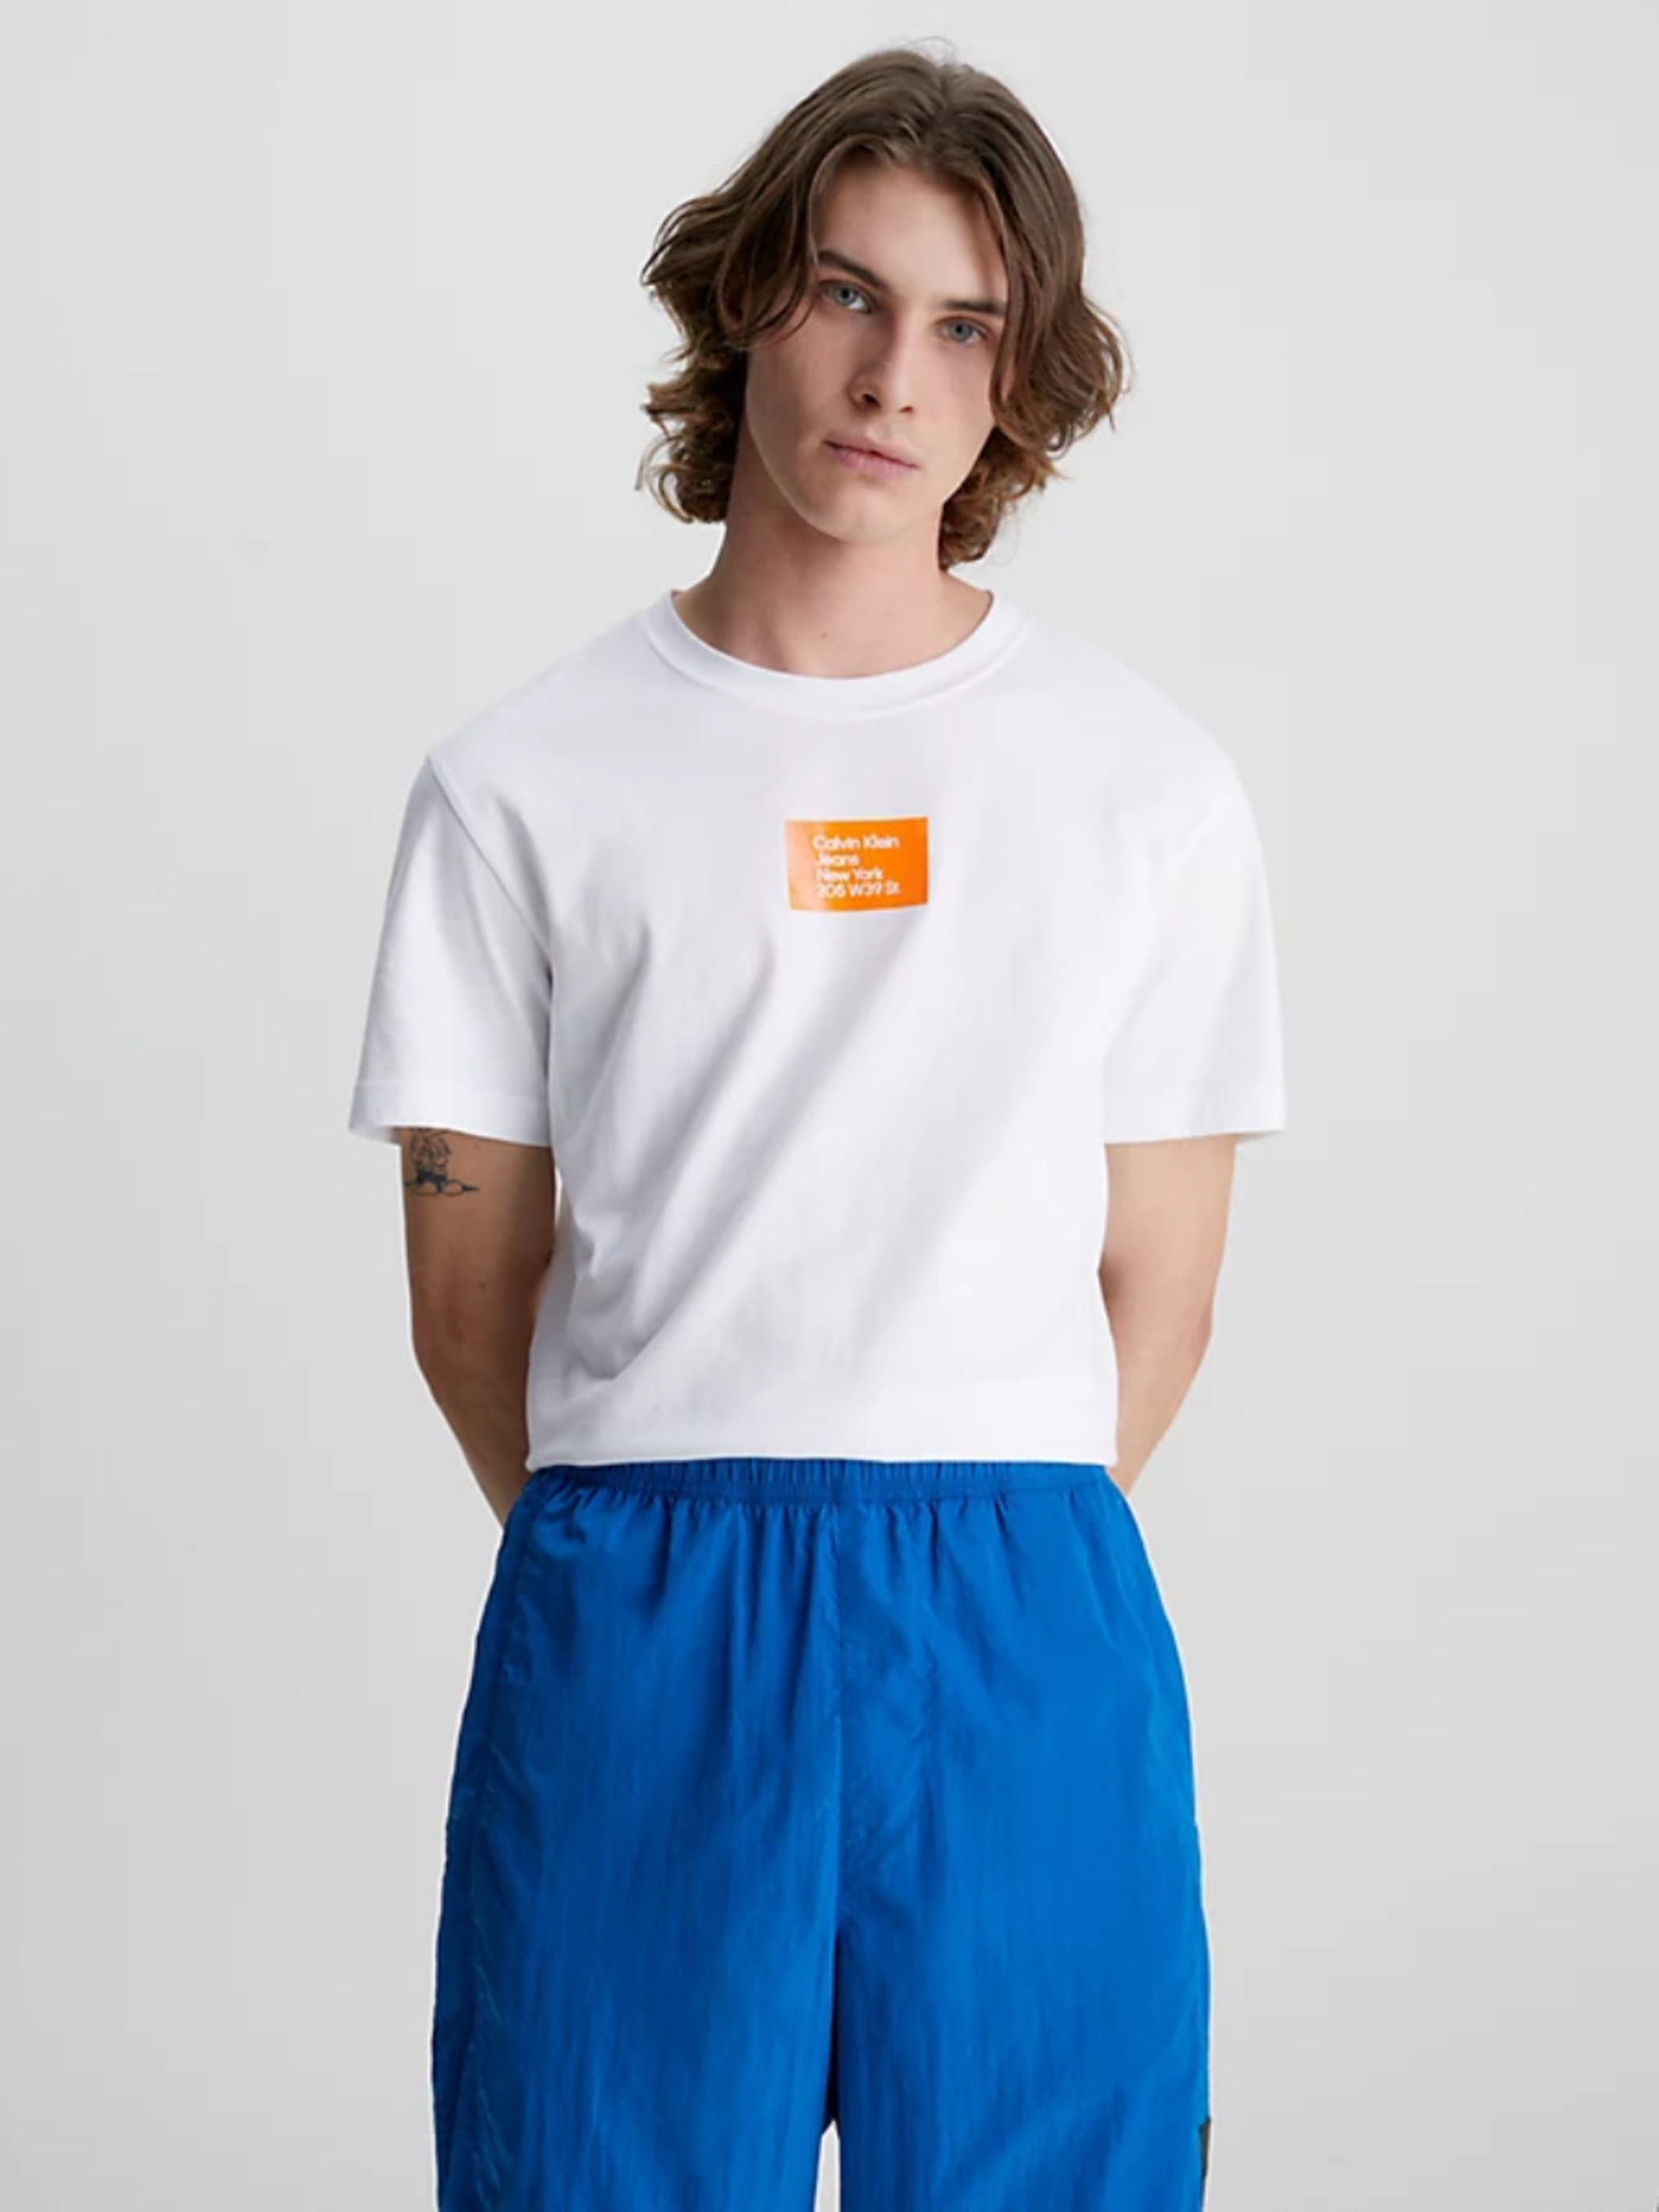 Calvin Klein pánské bílé tričko COLORED ADDRESS SMALL BOX - L (YAF)